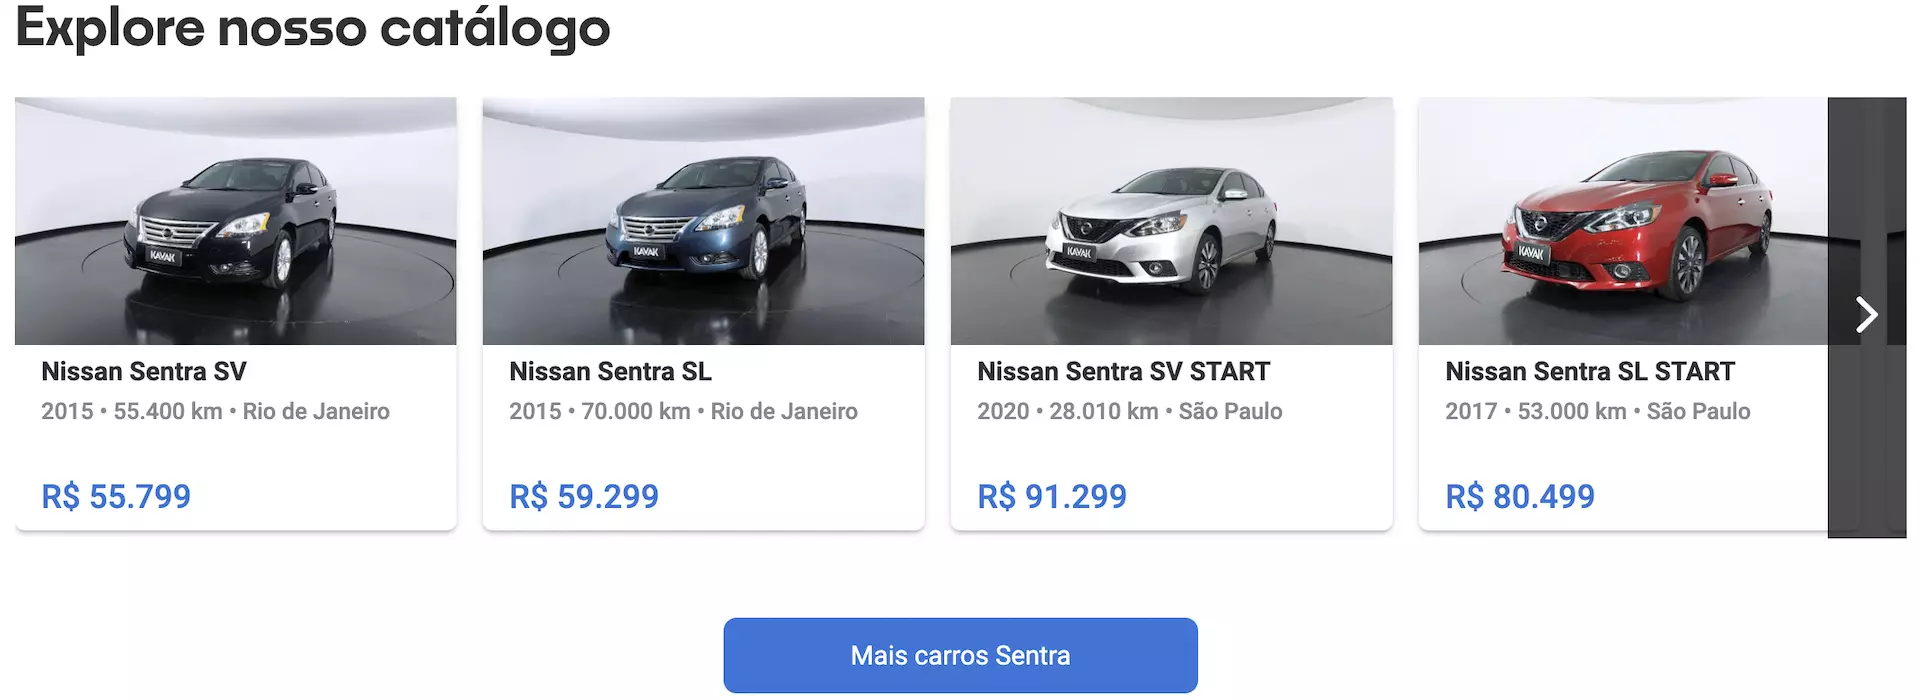 Nissan Sentra preço